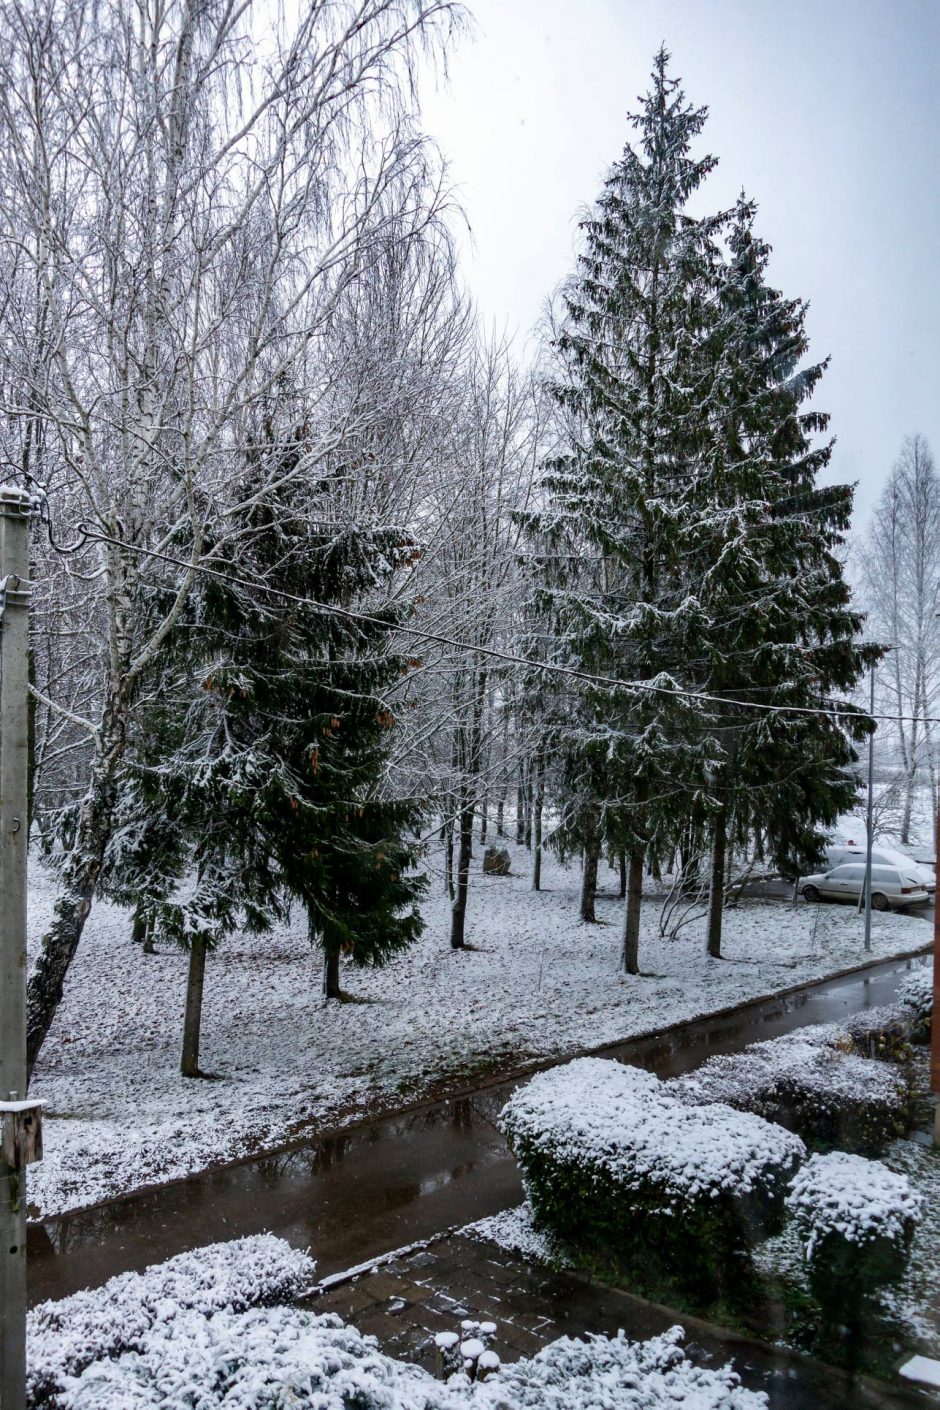 Lietuviai džiaugiasi pirmuoju sniegu: dalijasi žiemiškais vaizdais